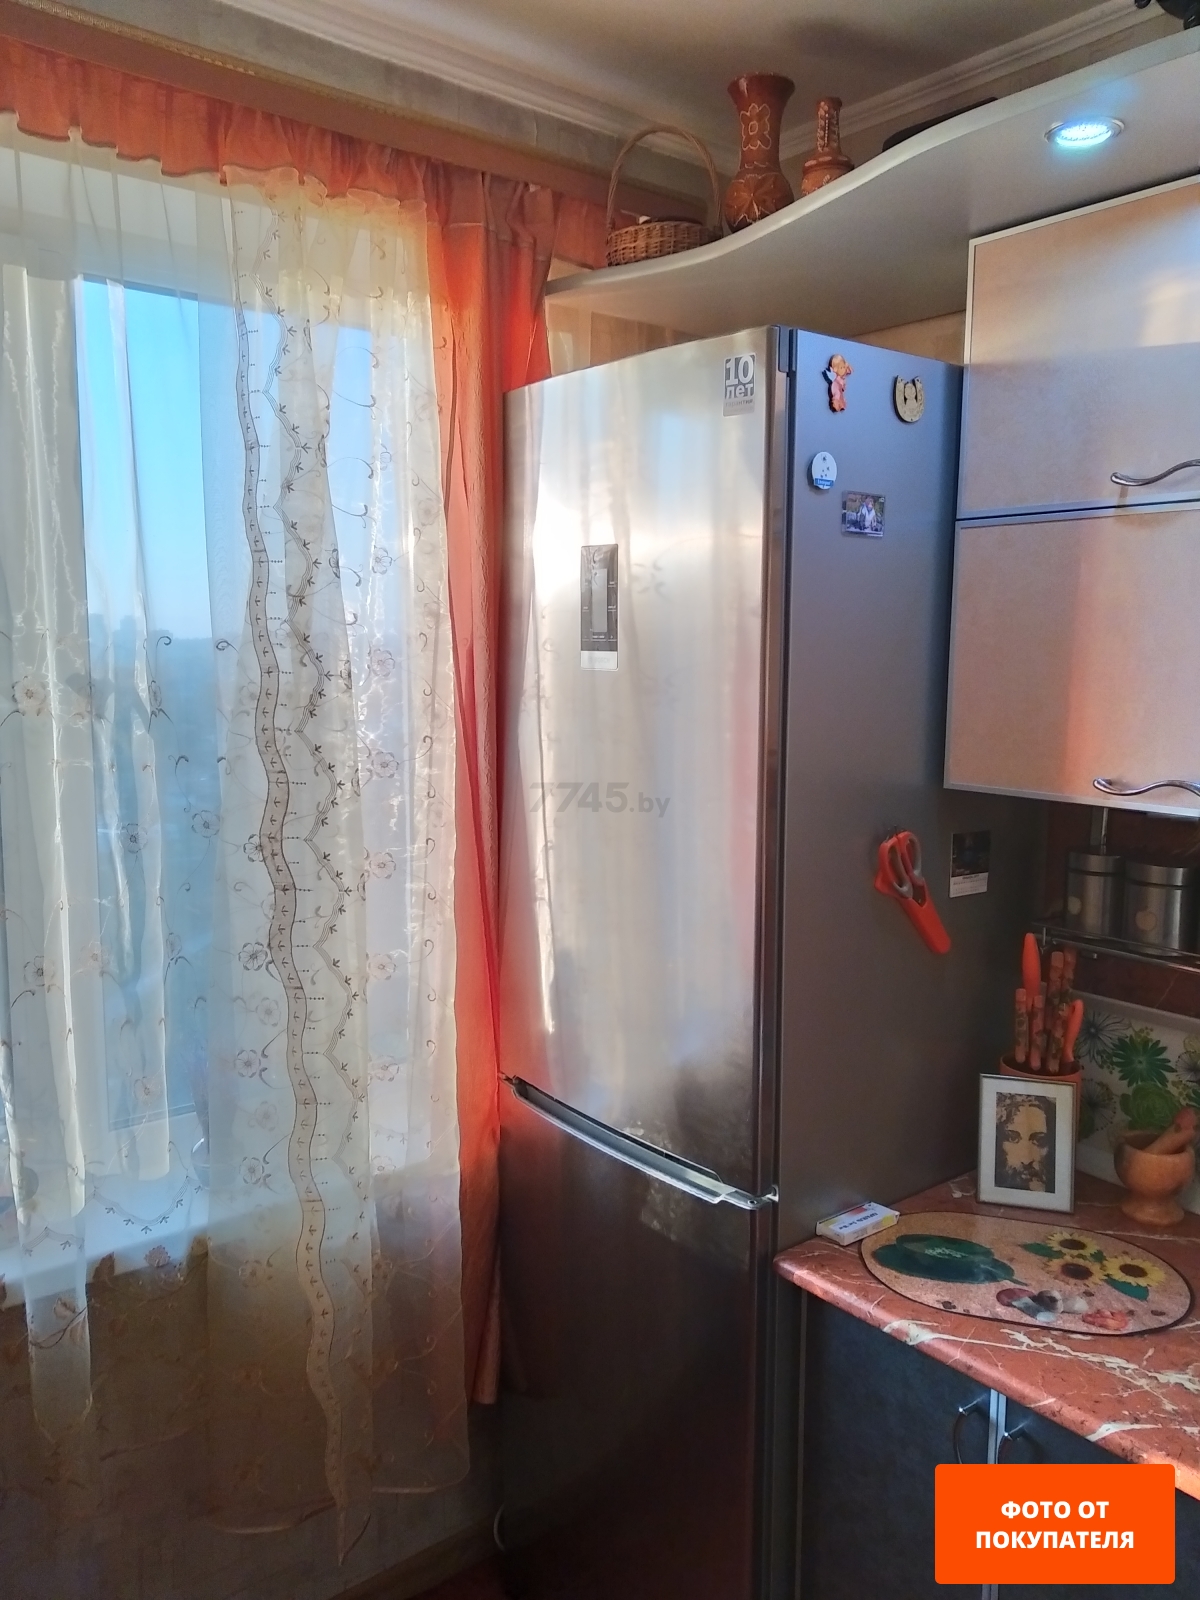 Холодильник BOSCH KGN39VI1MR